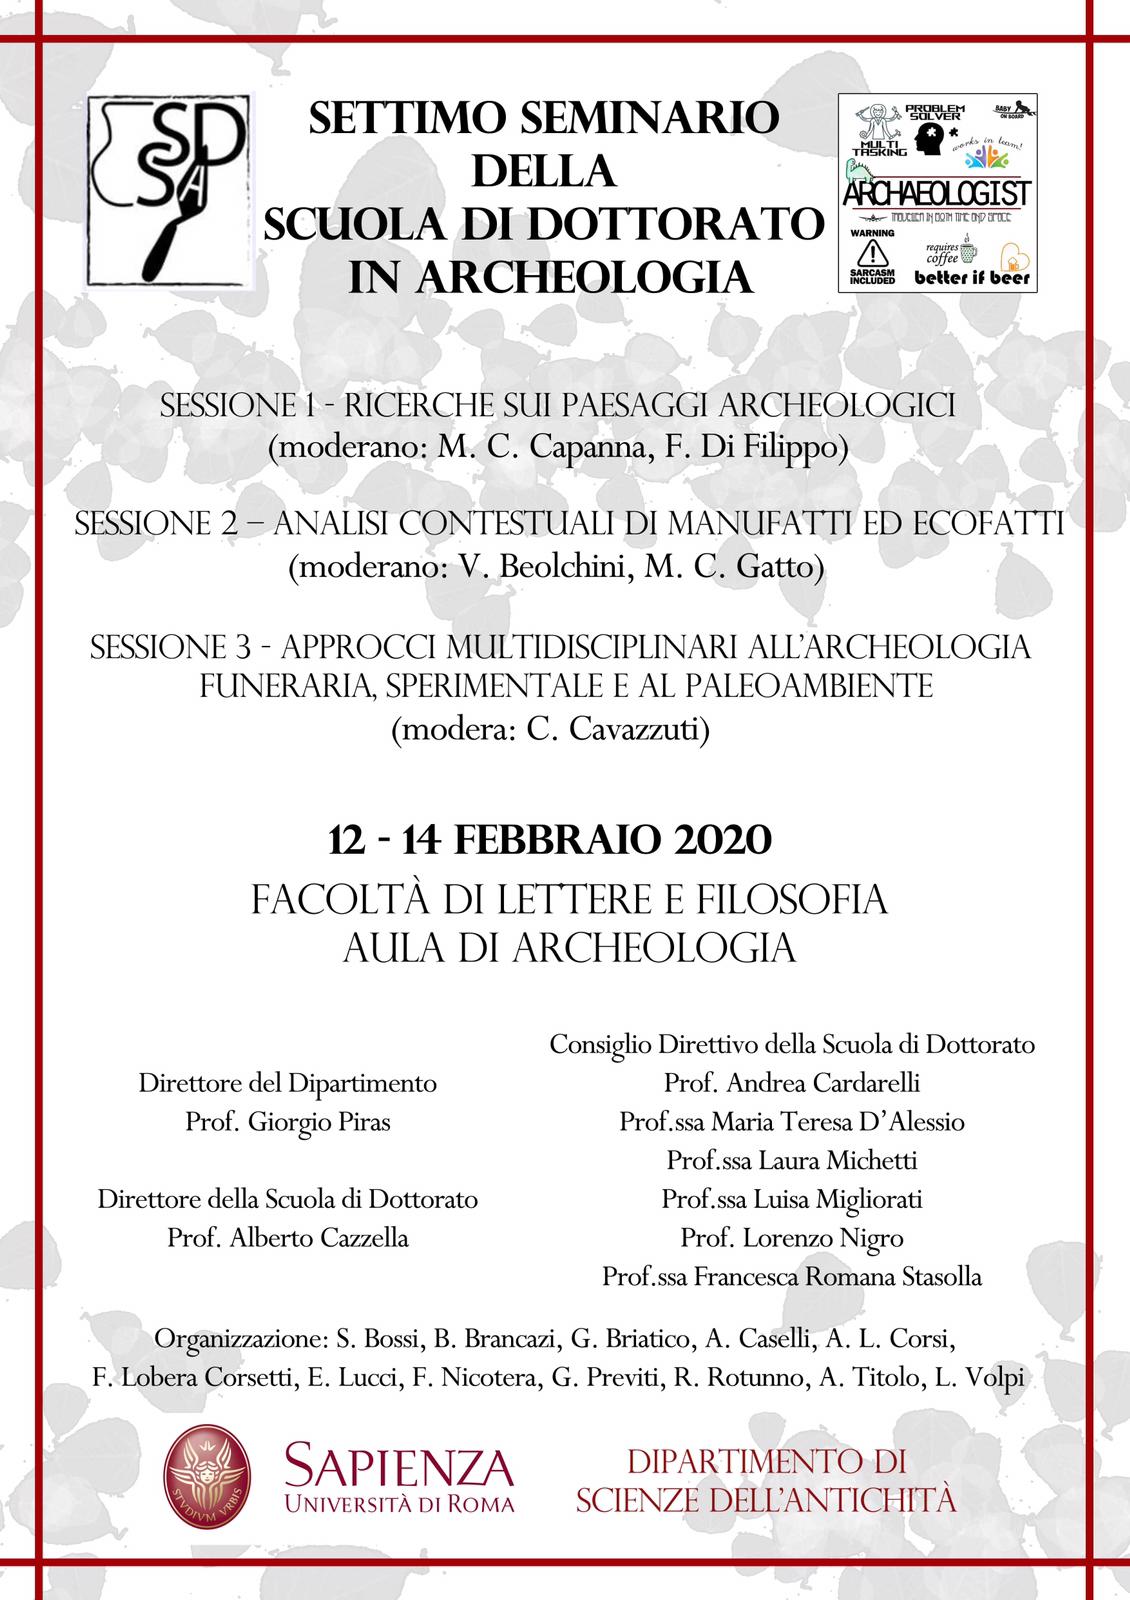 Settimo anniversario del Seminario della Scuola di dottorato in Archeologia